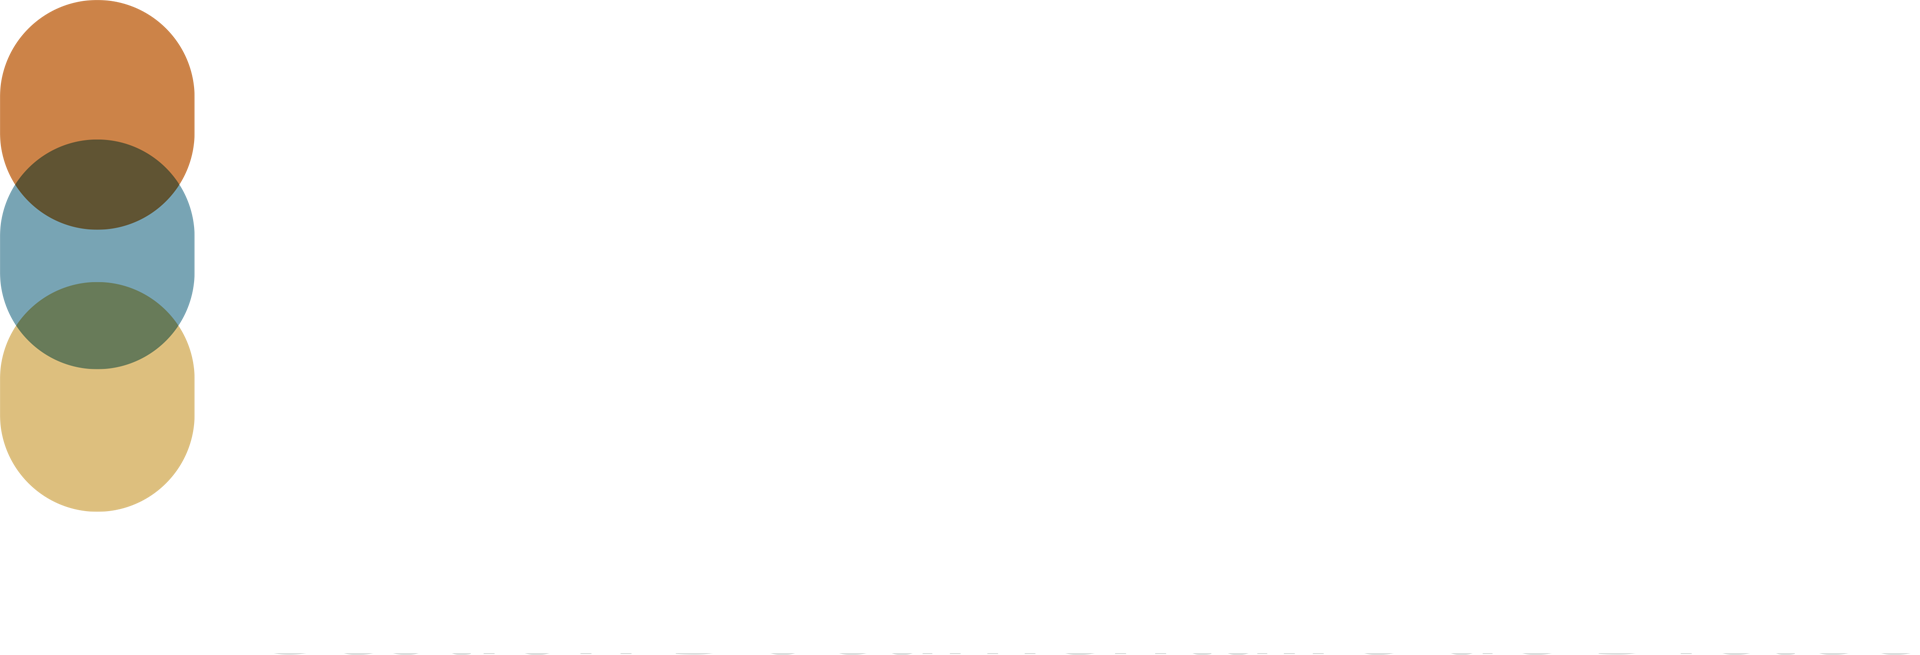 Logo DICMA Blanc